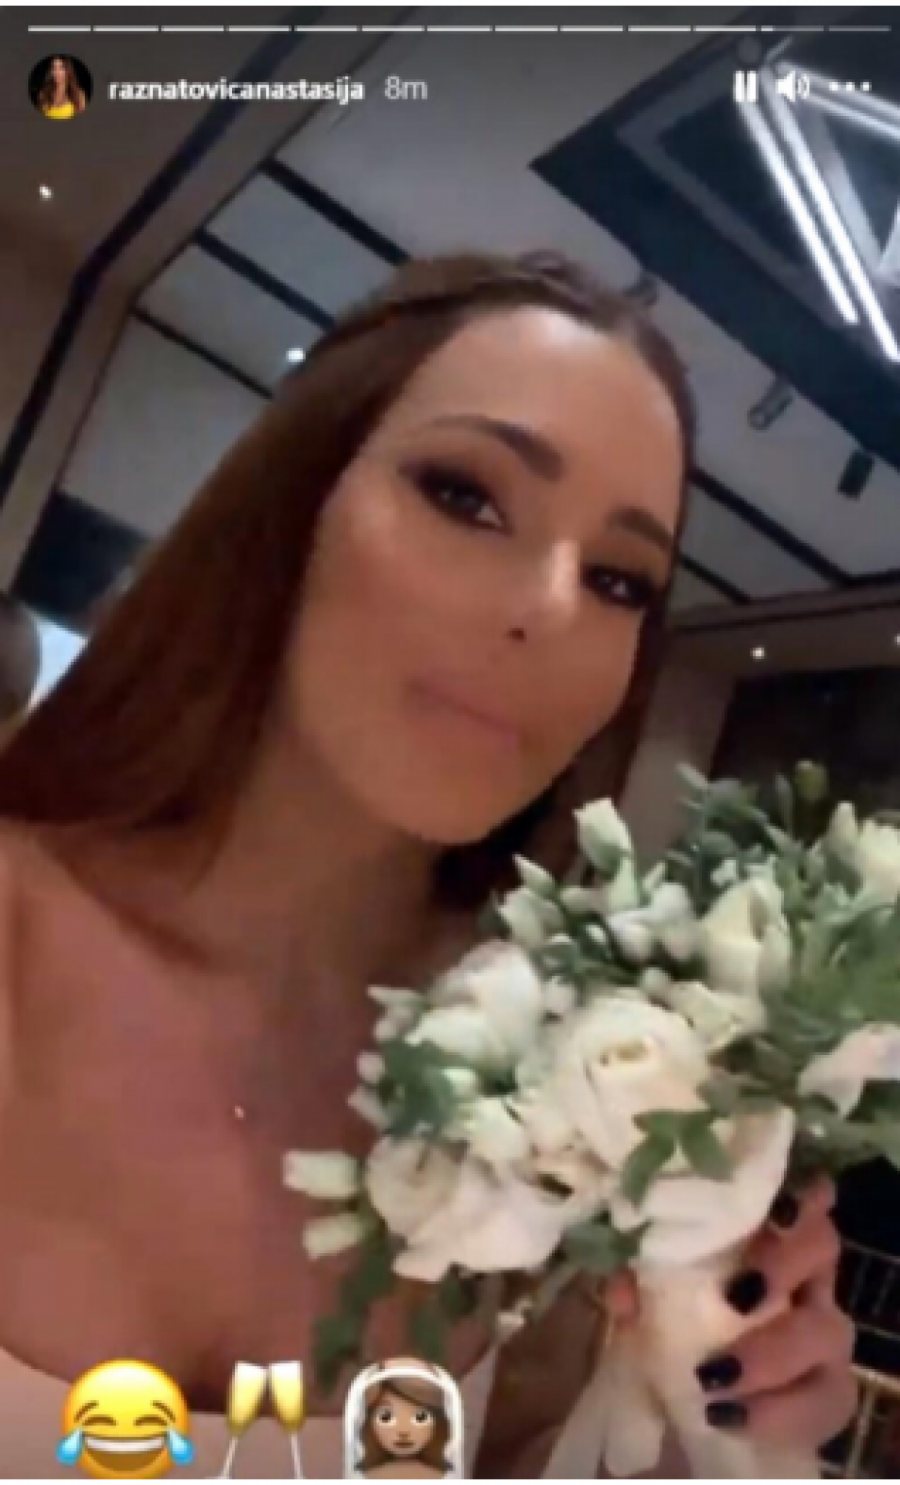 SLEDEĆA MLADA Anastasija na svadbi uhvatila bidermajer, u prelepoj haljini boje šampanjca pevačica plenila pažnju (FOTO)